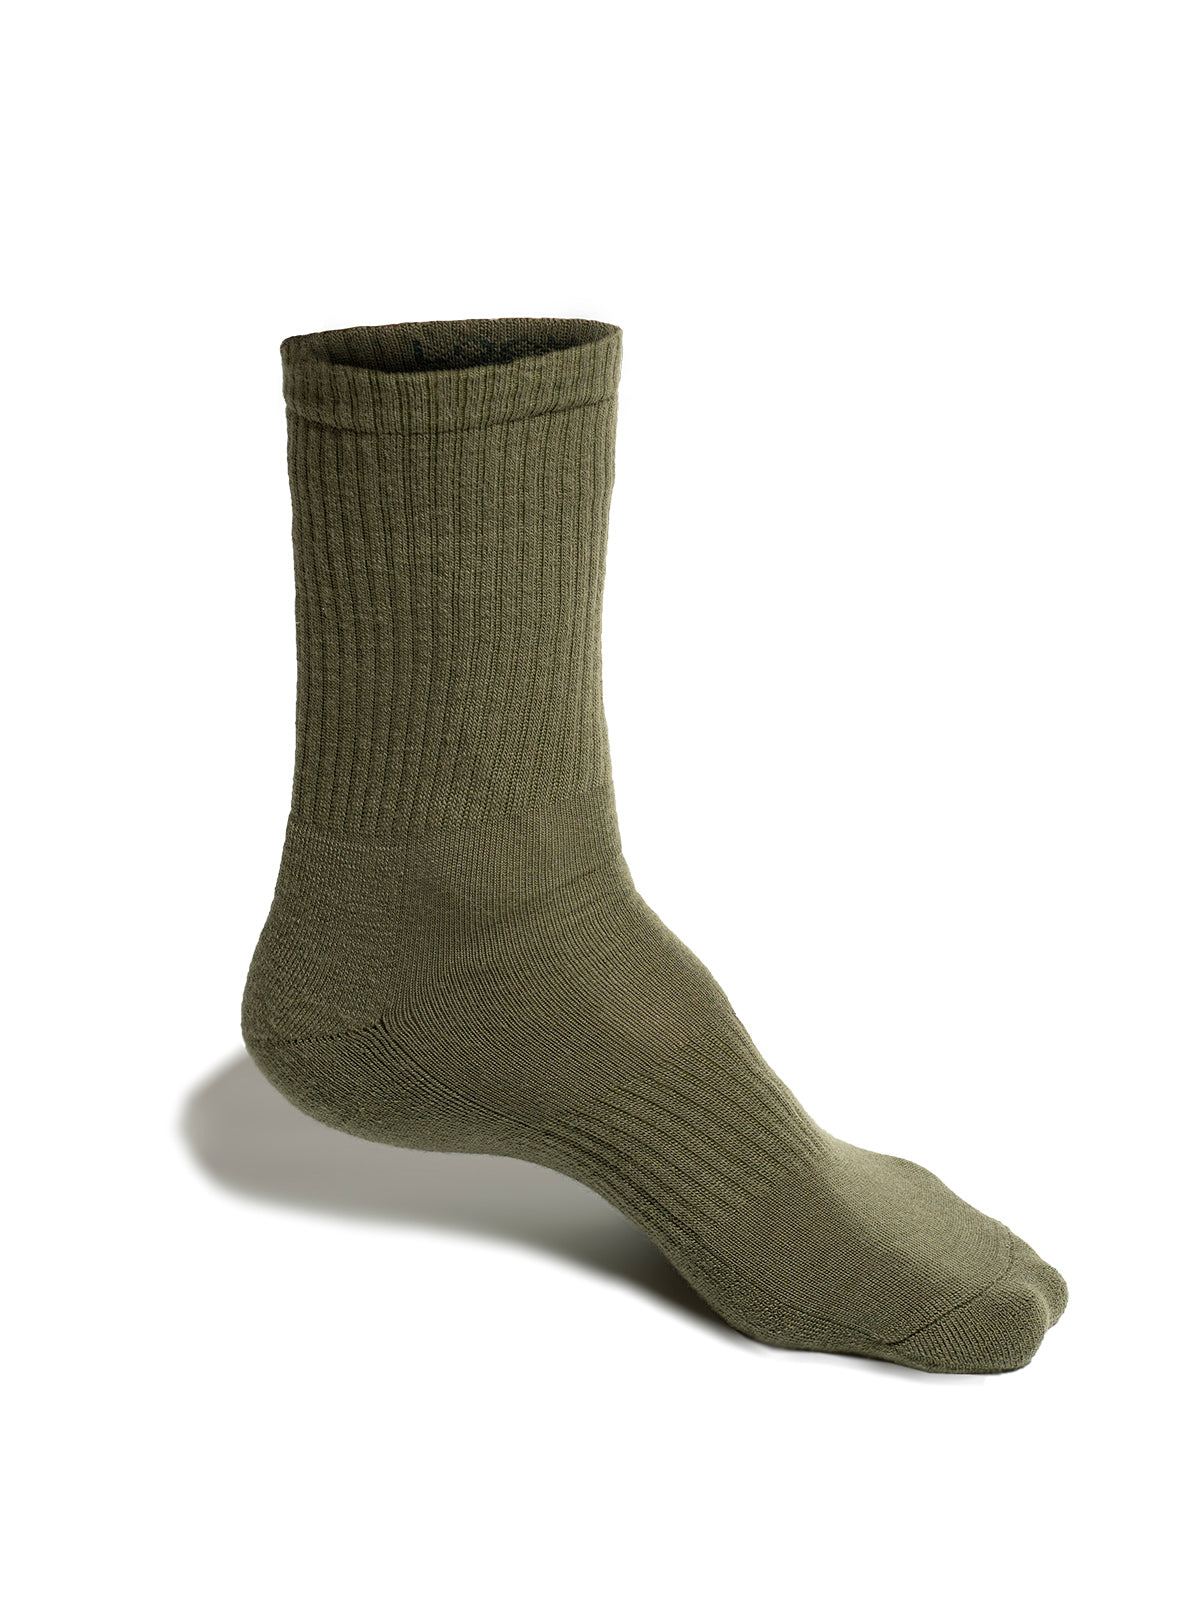 3x HS-50 Merino Socks